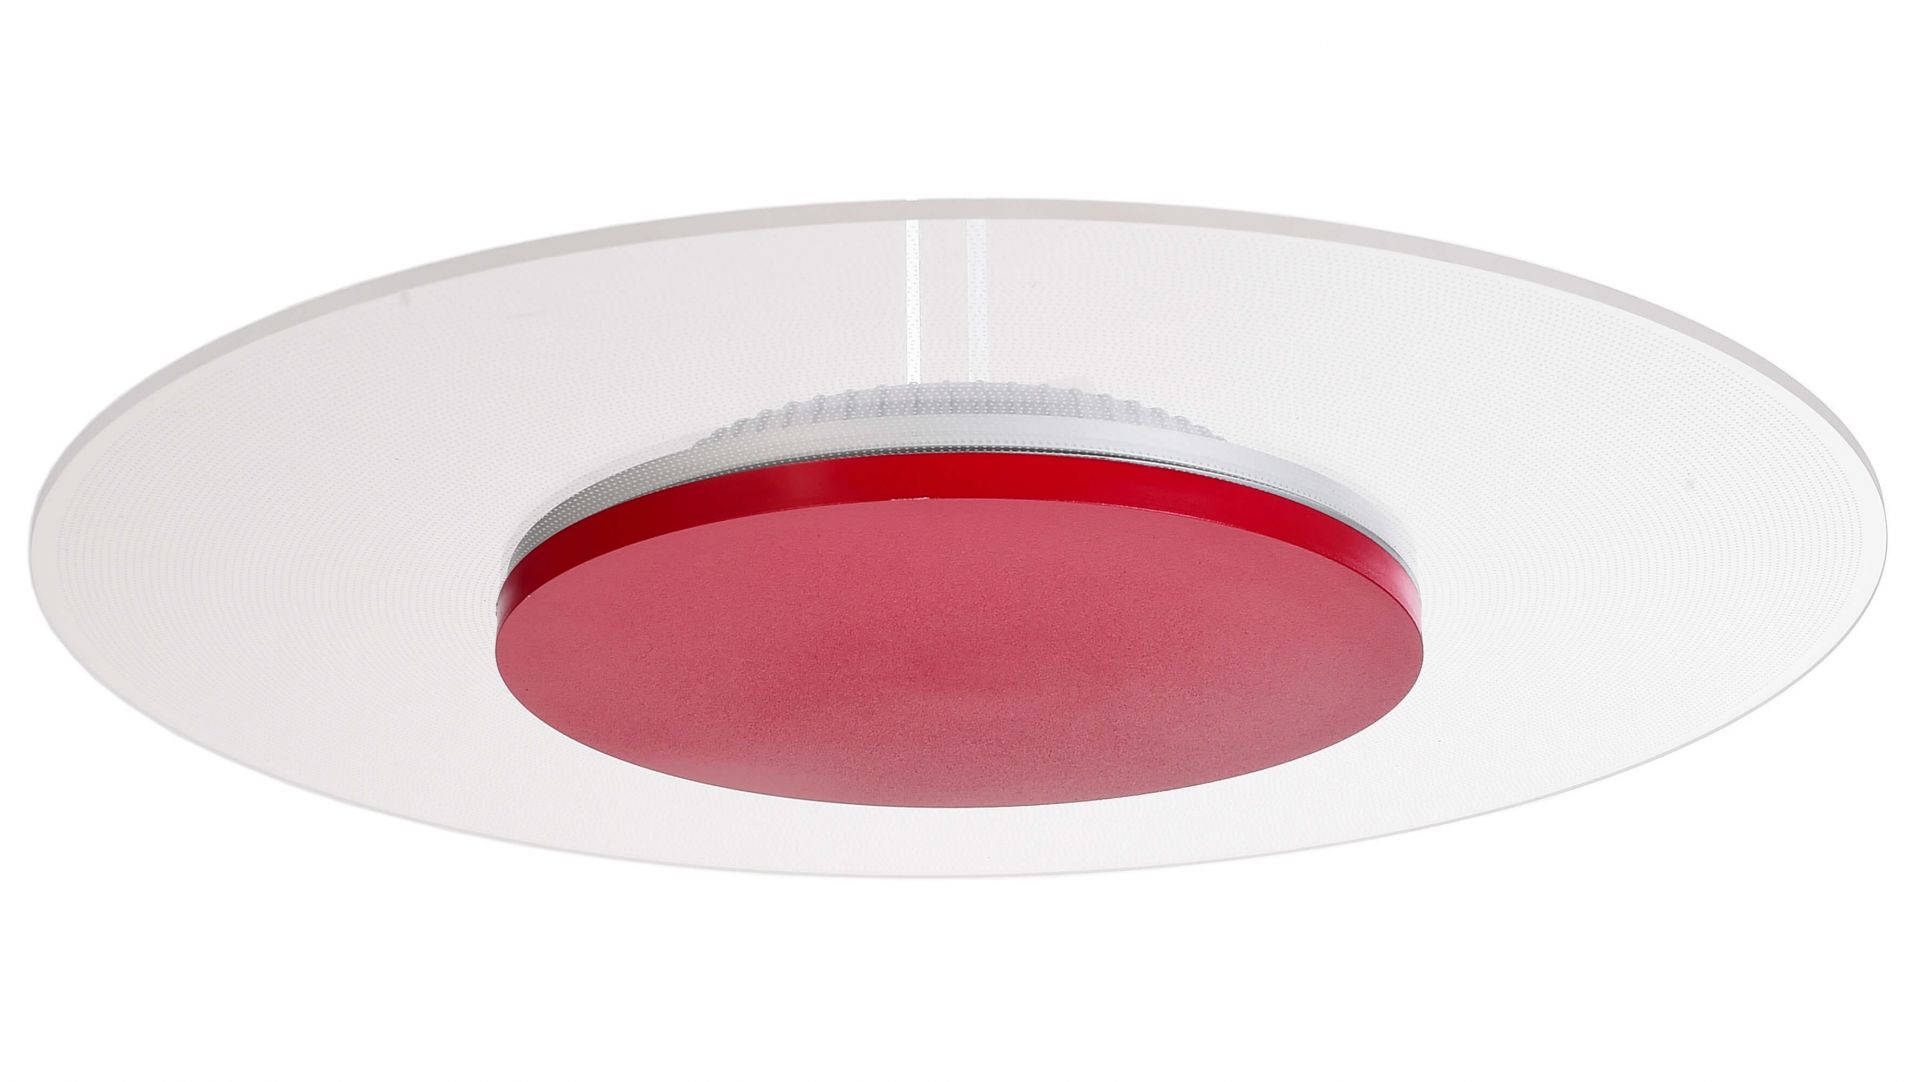 Потолочный светильник Zaniah 24W накладка рубиново-красный Deko-Light 620052 620052